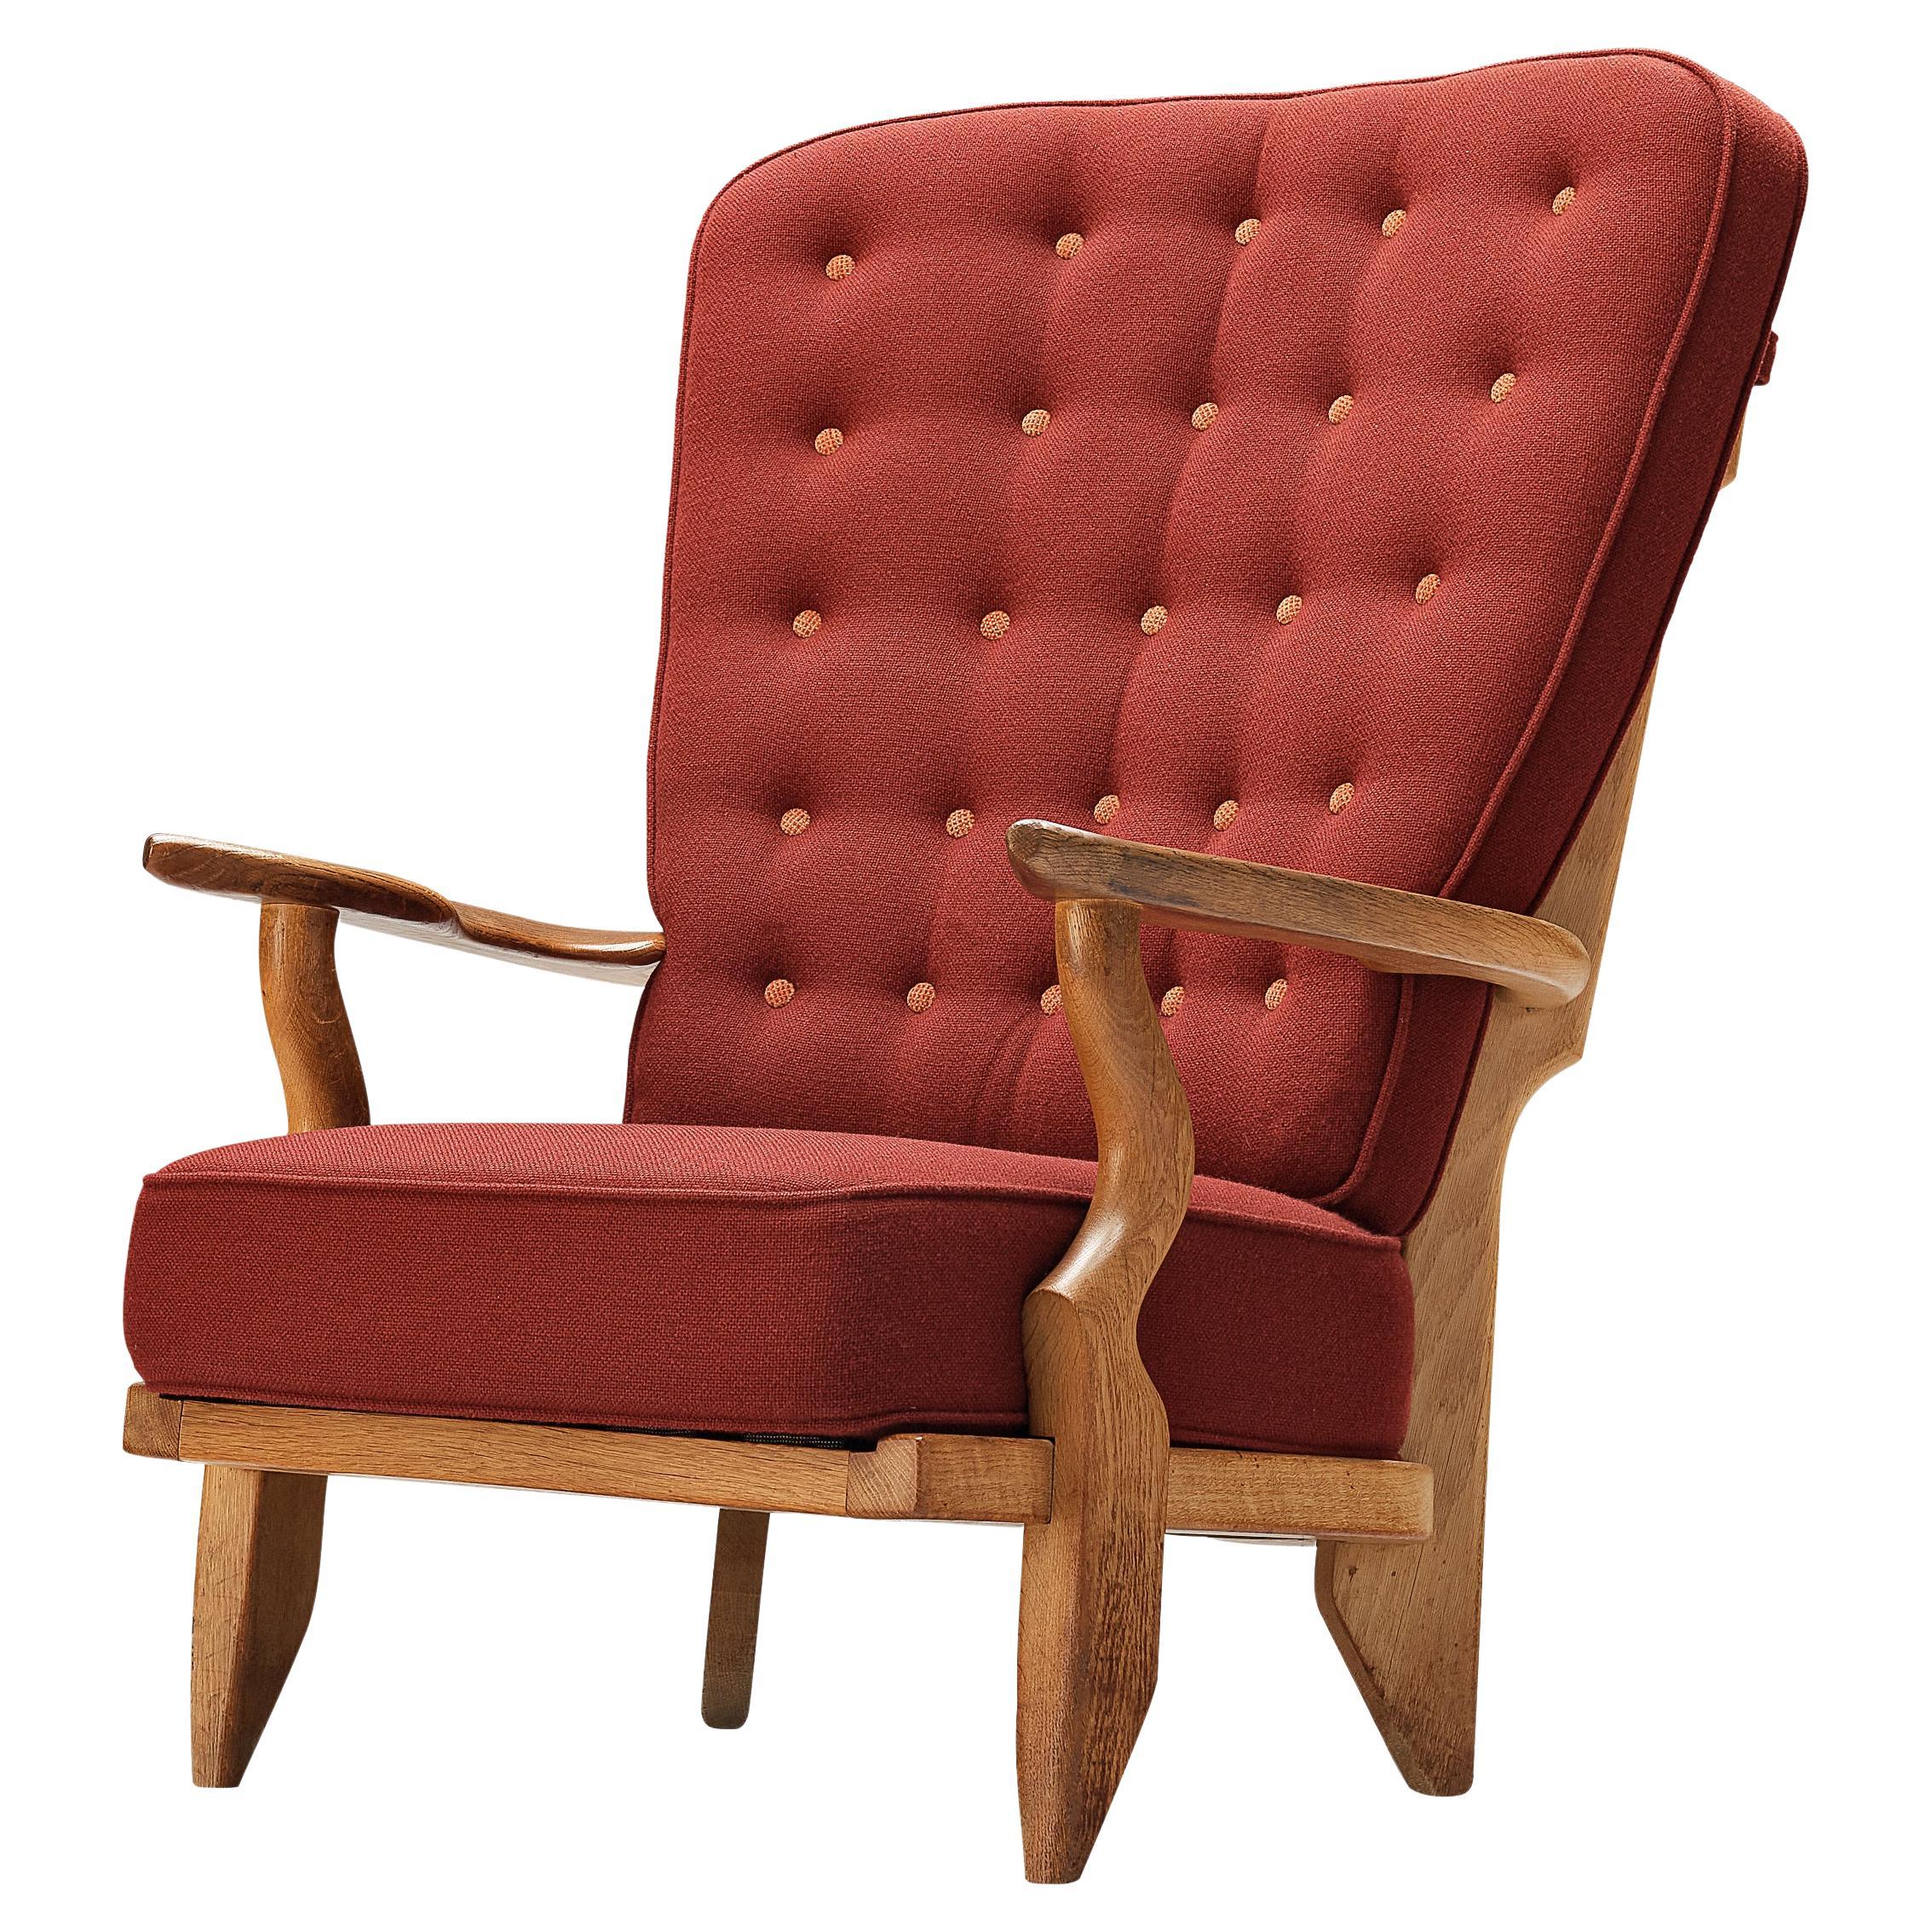 Chaise longue « Grand Repos » de Guillerme & Chambron en tissu rouge et chêne 